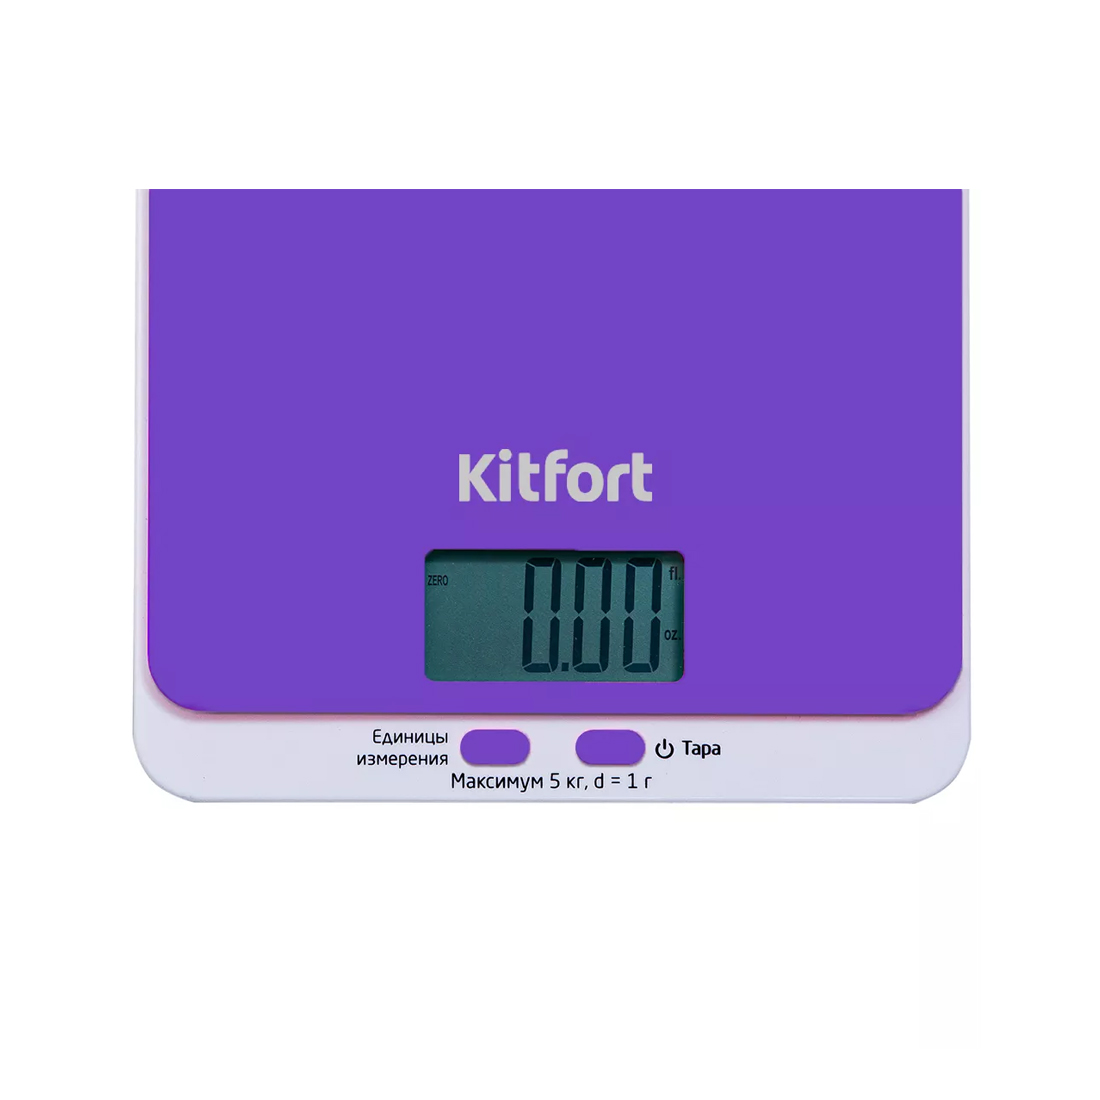 Весы кухонные Kitfort КТ-803-6, фиолетовые